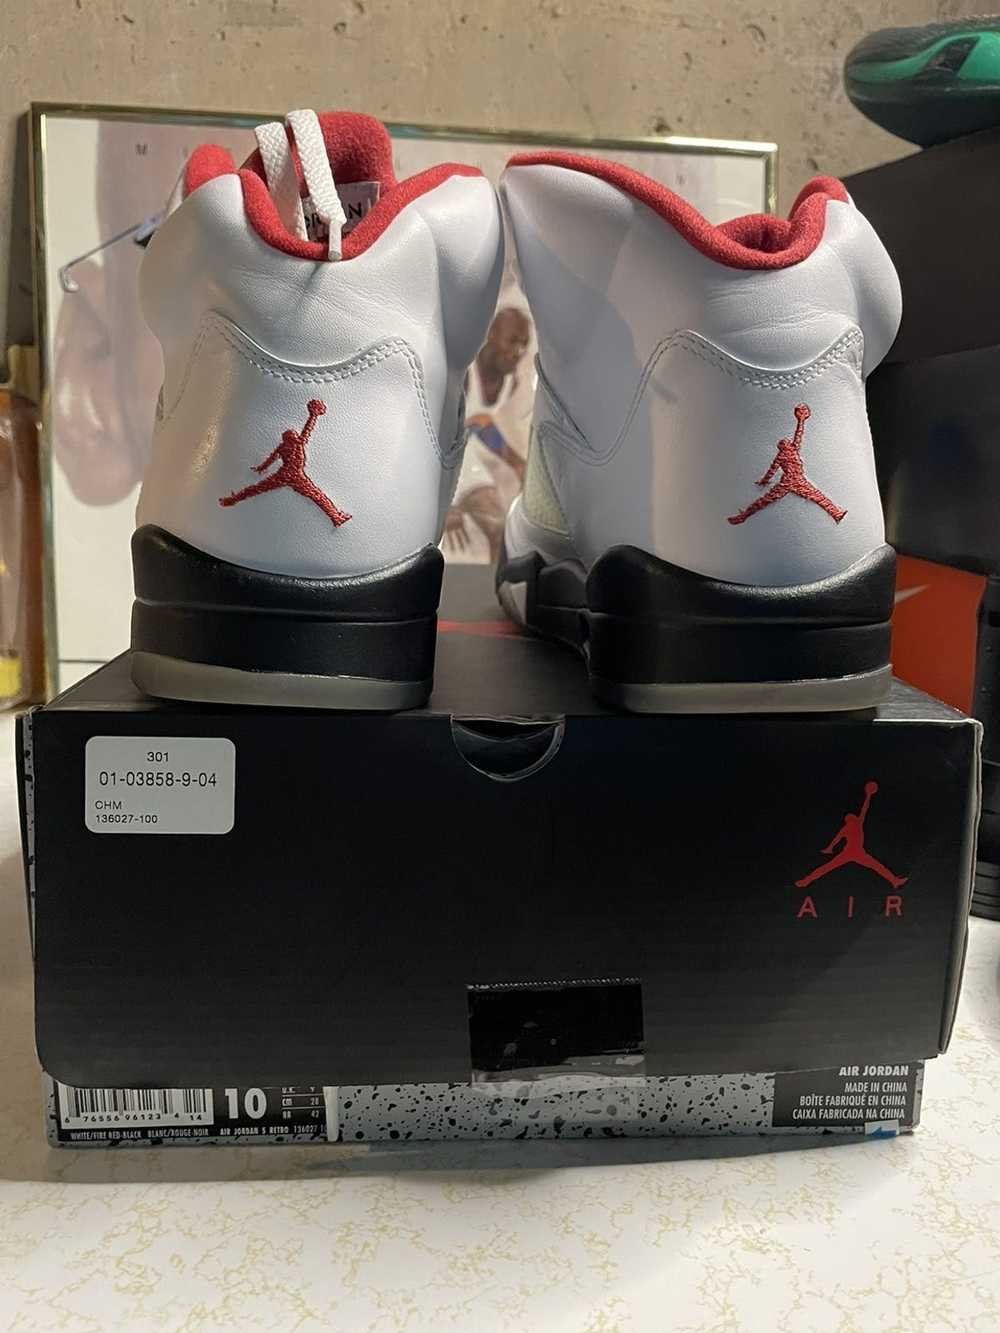 Jordan Brand Jordan Retro 5 “Fire Red” - image 7